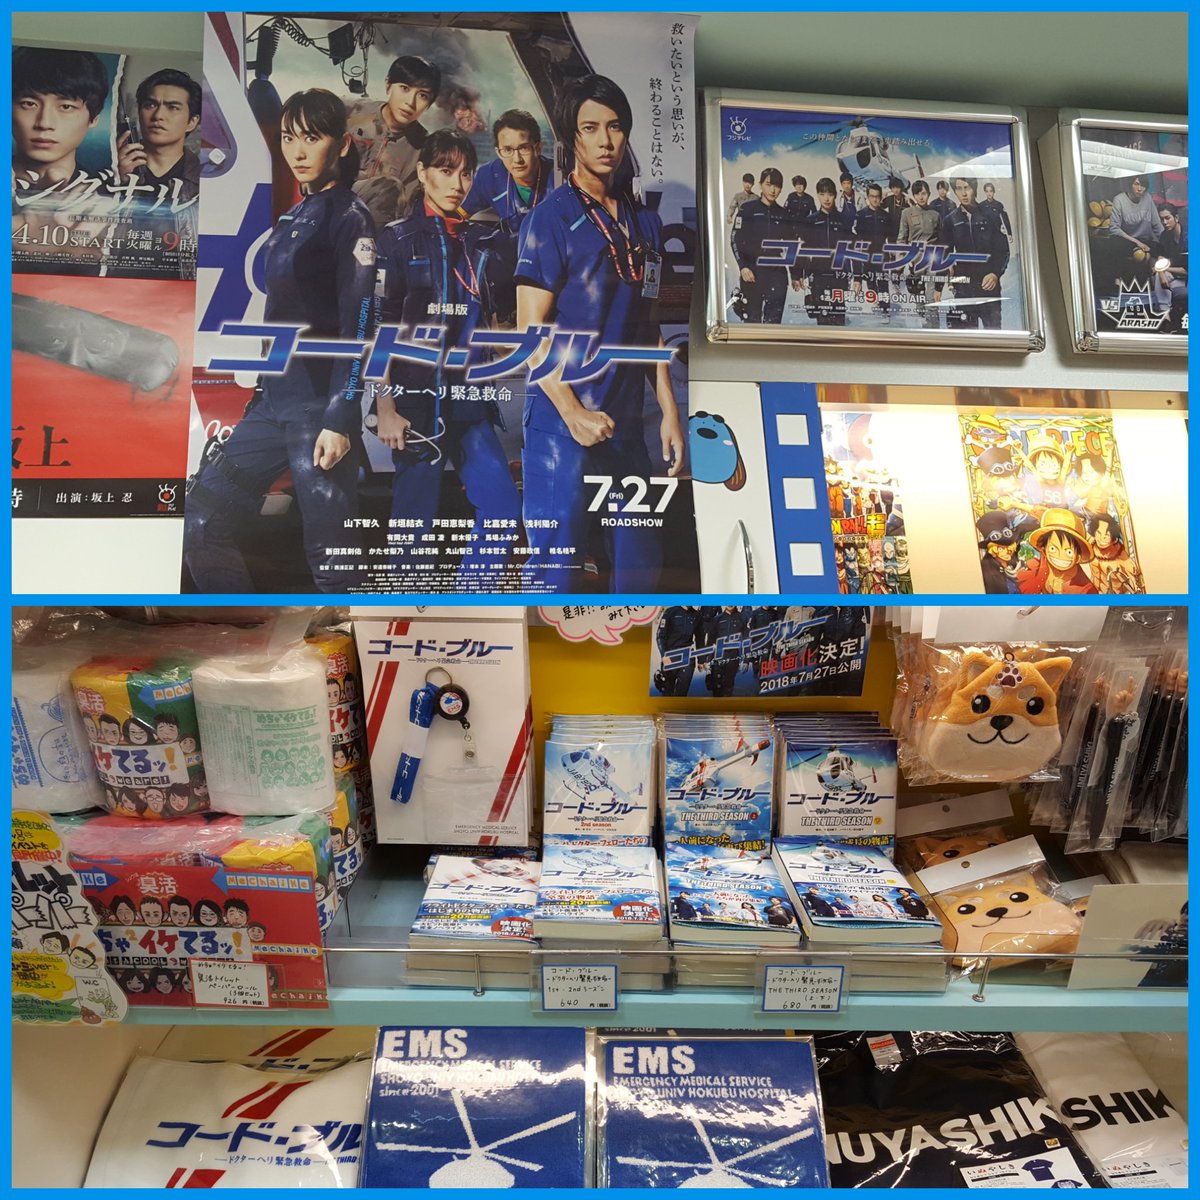 Mirai V Twitter フジテレビショップ 東京駅 レジ後ろにデーンと5人の顔が 店内 映画予告もながれています 映画のポスターもあります グッズ これから映画版バージョンが増えるとよいですね コード ブルー 劇場版コード ブルー